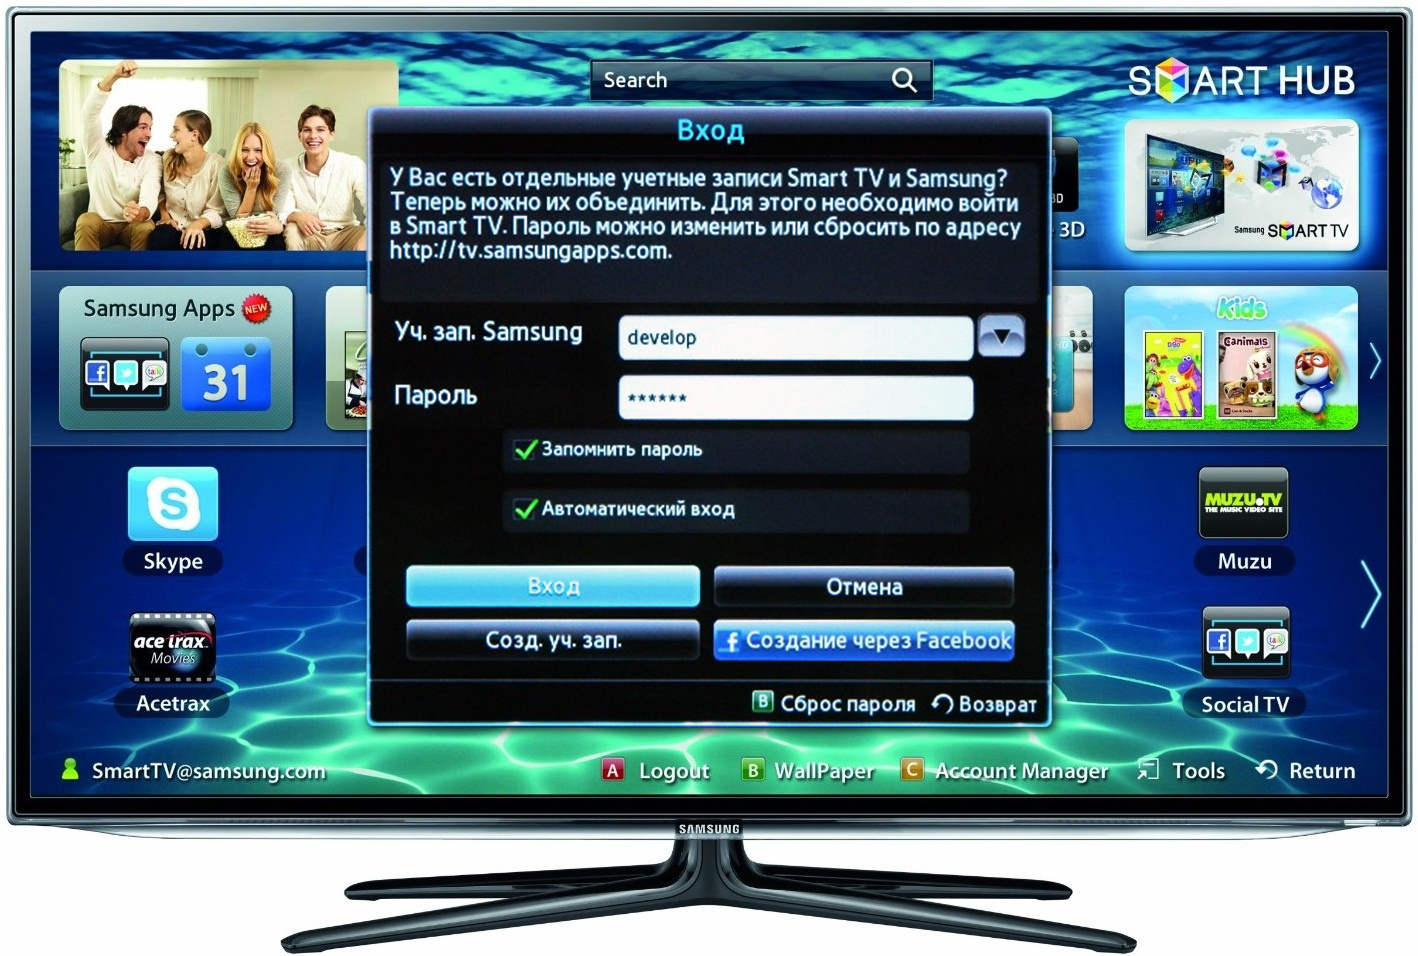 Що потрібно для перегляду IPTV на телевізорі?